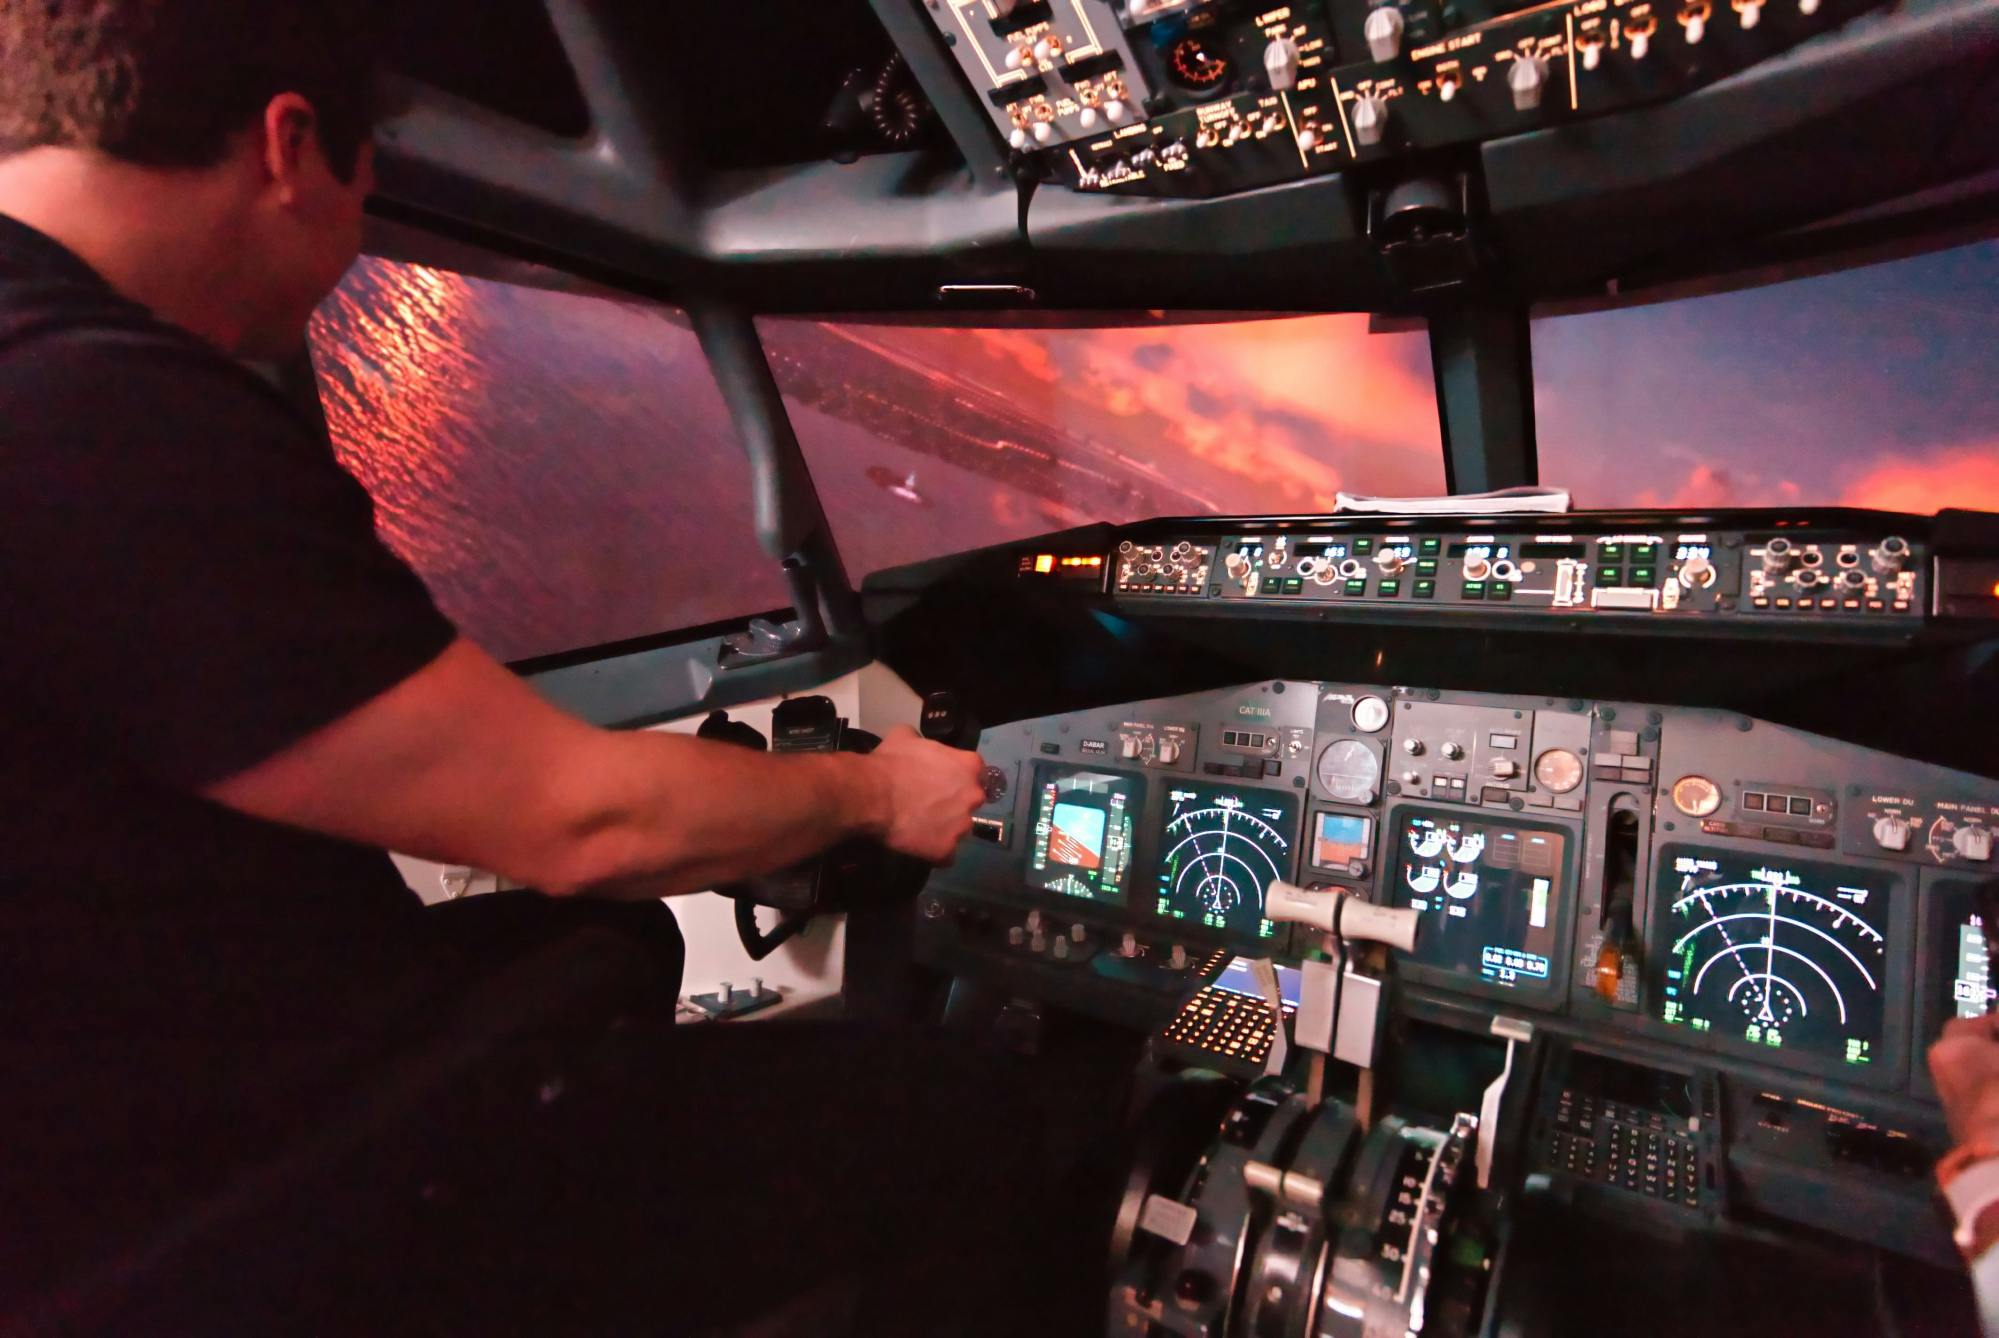 Vuelo de 60 minutos en simulador de vuelo Boeing 737 en Colonia